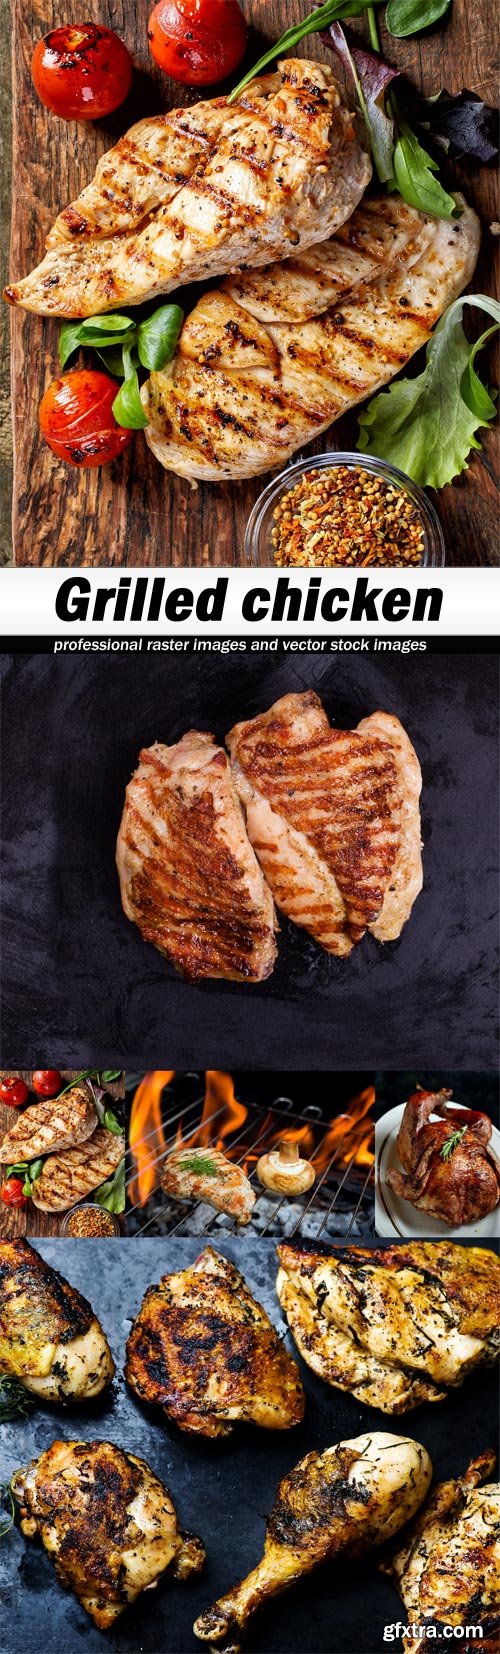 Grilled chicken-5xJPEGs